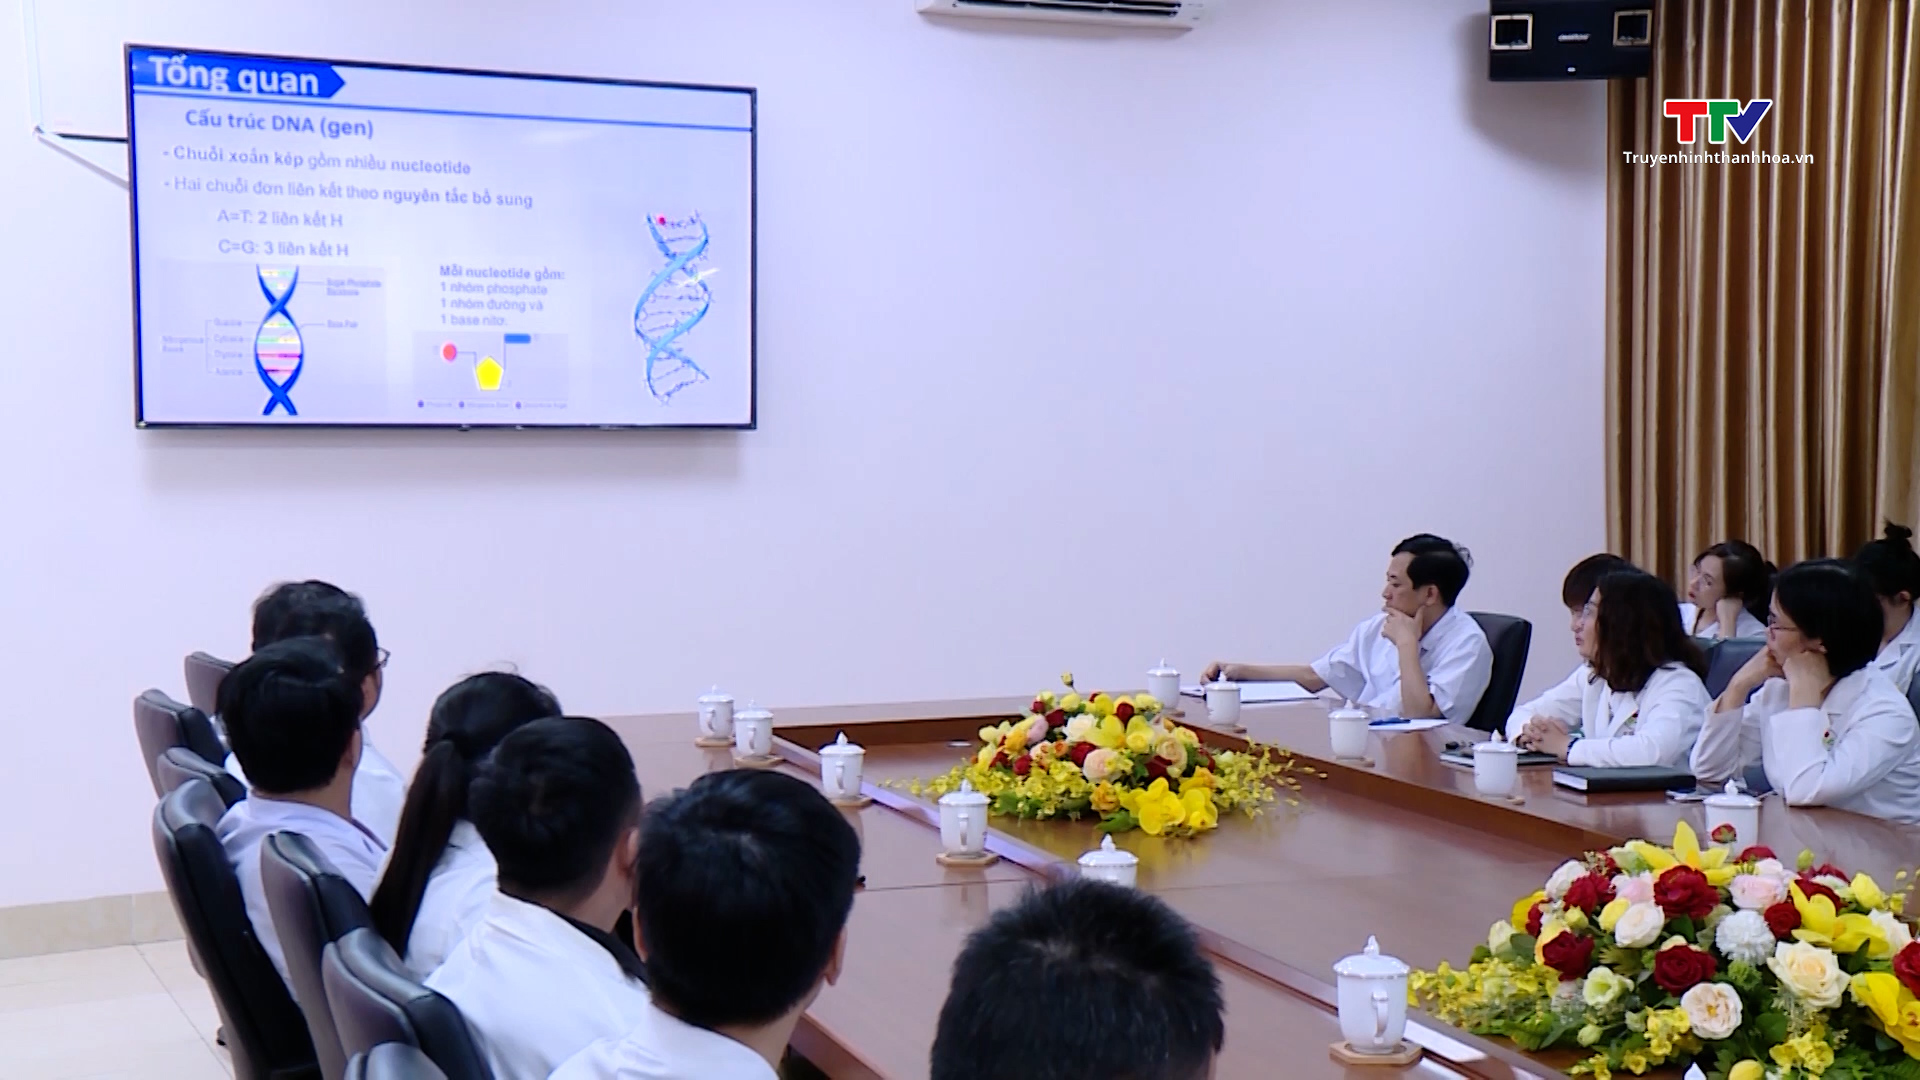 Bệnh viện Ung bướu tỉnh Thanh Hoá làm chủ kỹ thuật xét nghiệm sinh học phân tử về đột biến gen- Ảnh 1.